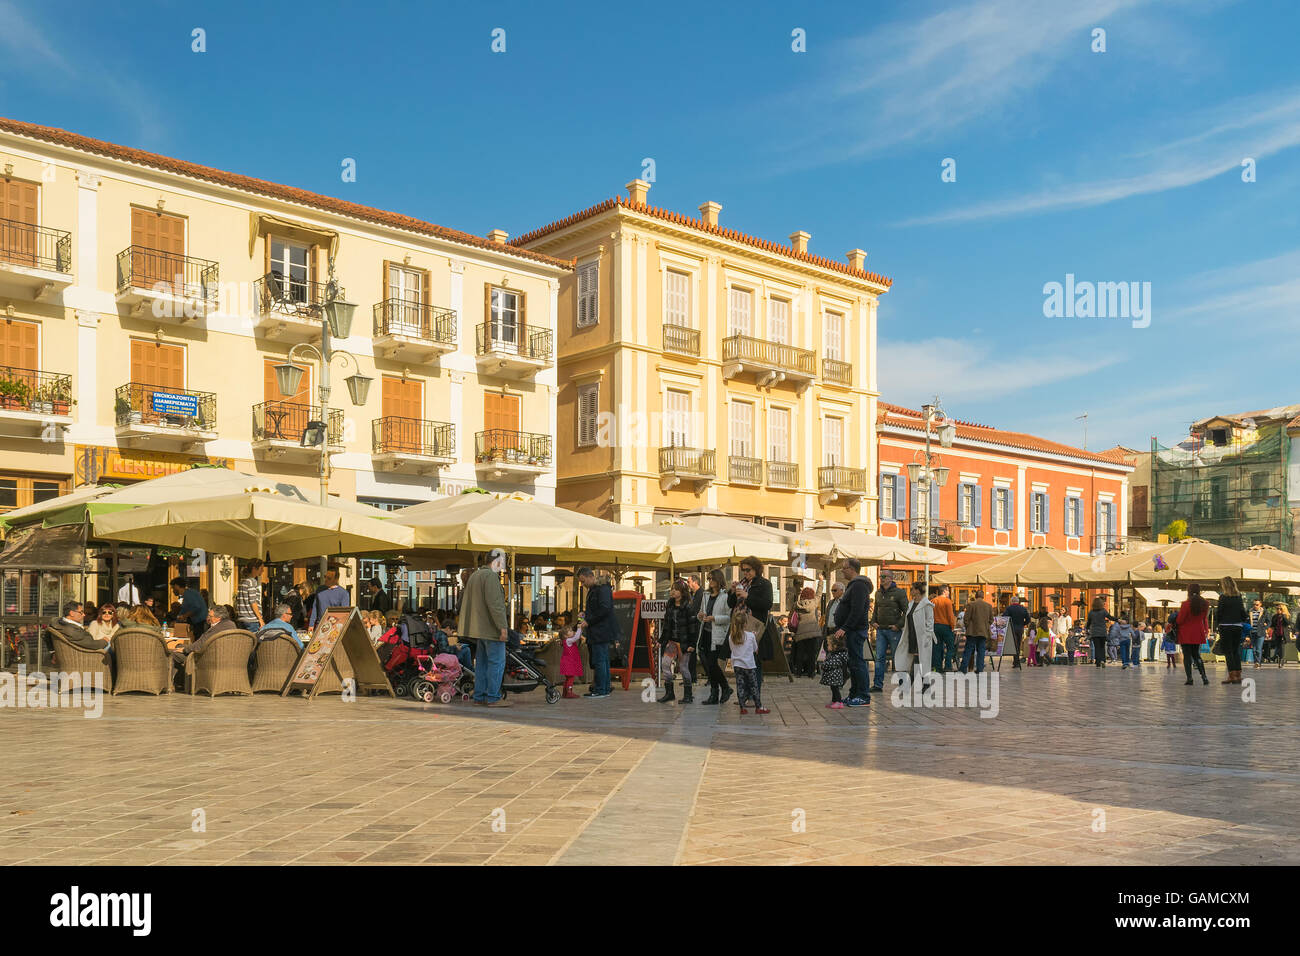 Nafplio, Grecia 27 dicembre 2015. Le persone che si godono il loro tempo libero in piazza Syntagma a Nafplio Grecia. Foto Stock